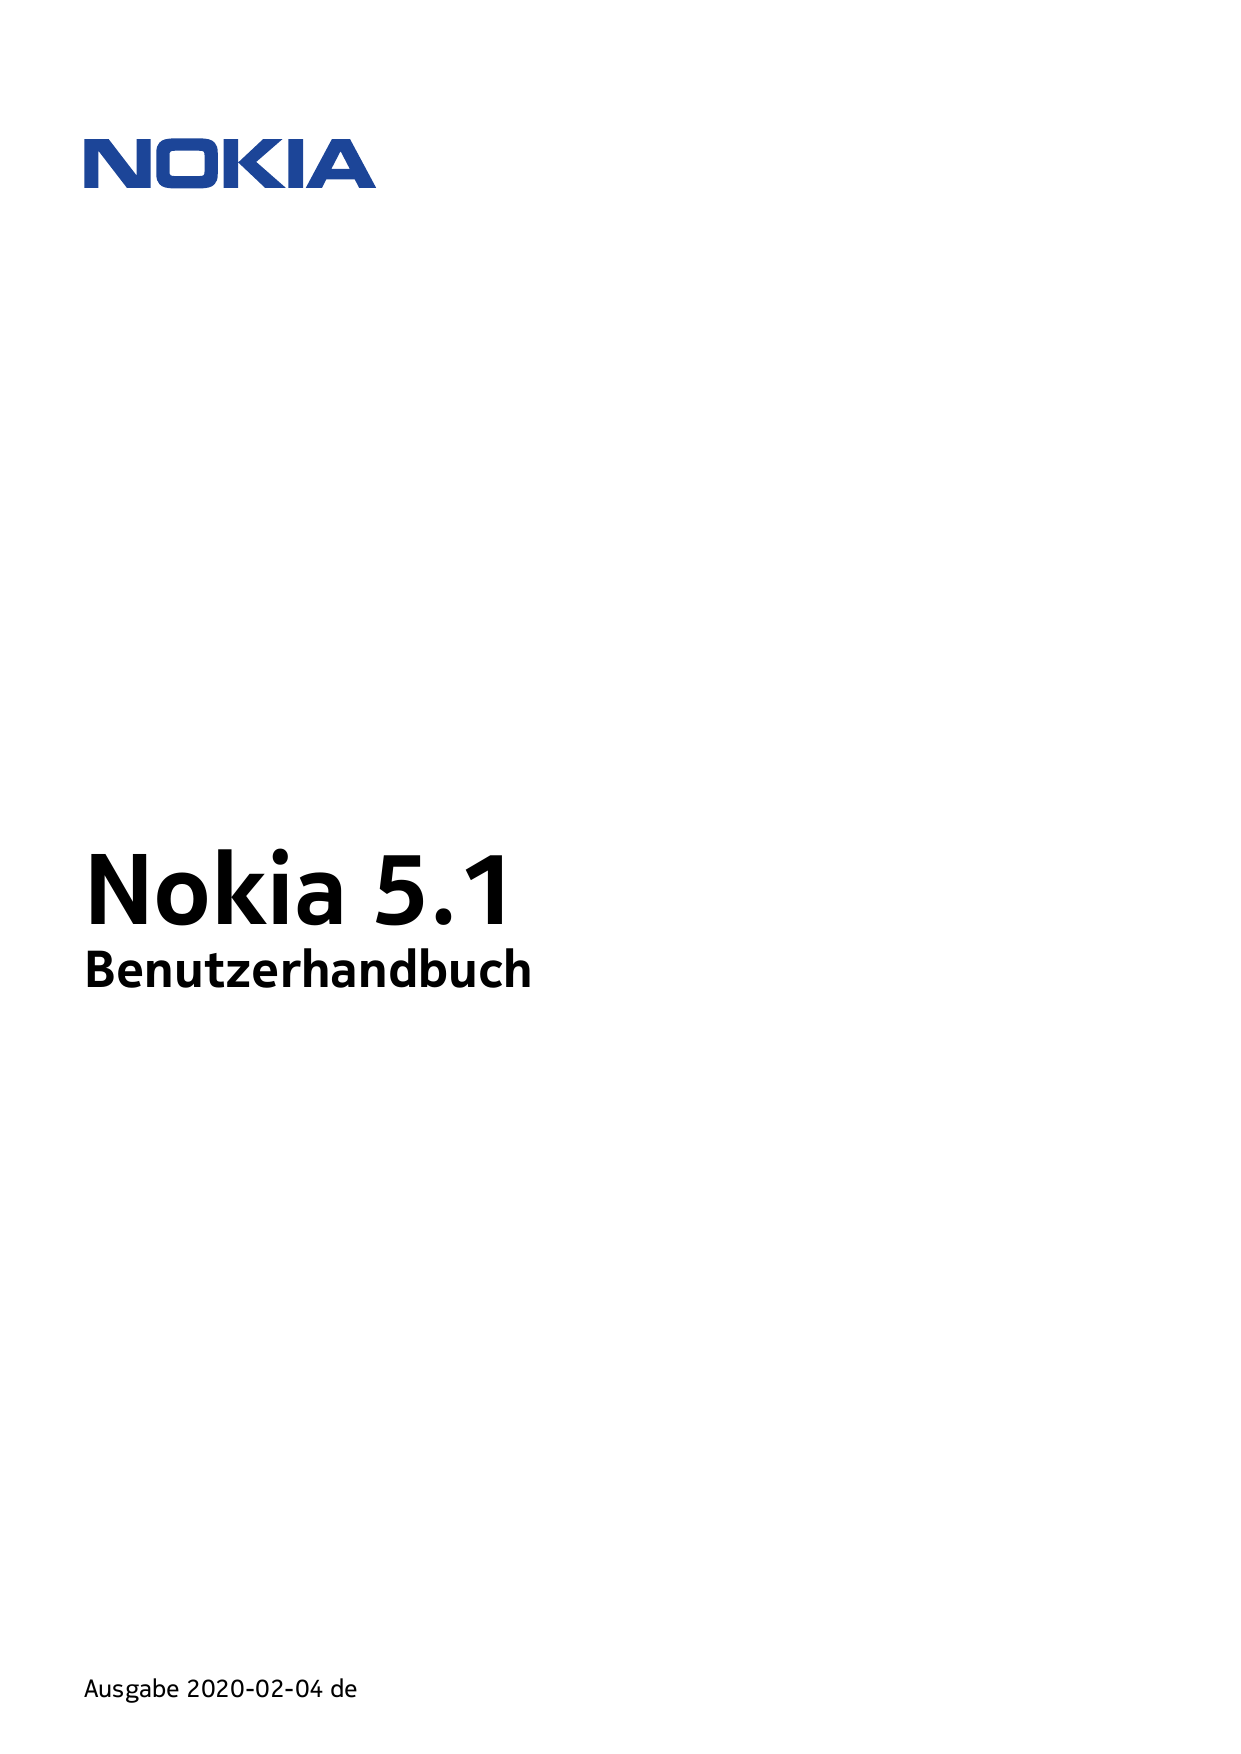 Nokia 5.1BenutzerhandbuchAusgabe 2020-02-04 de